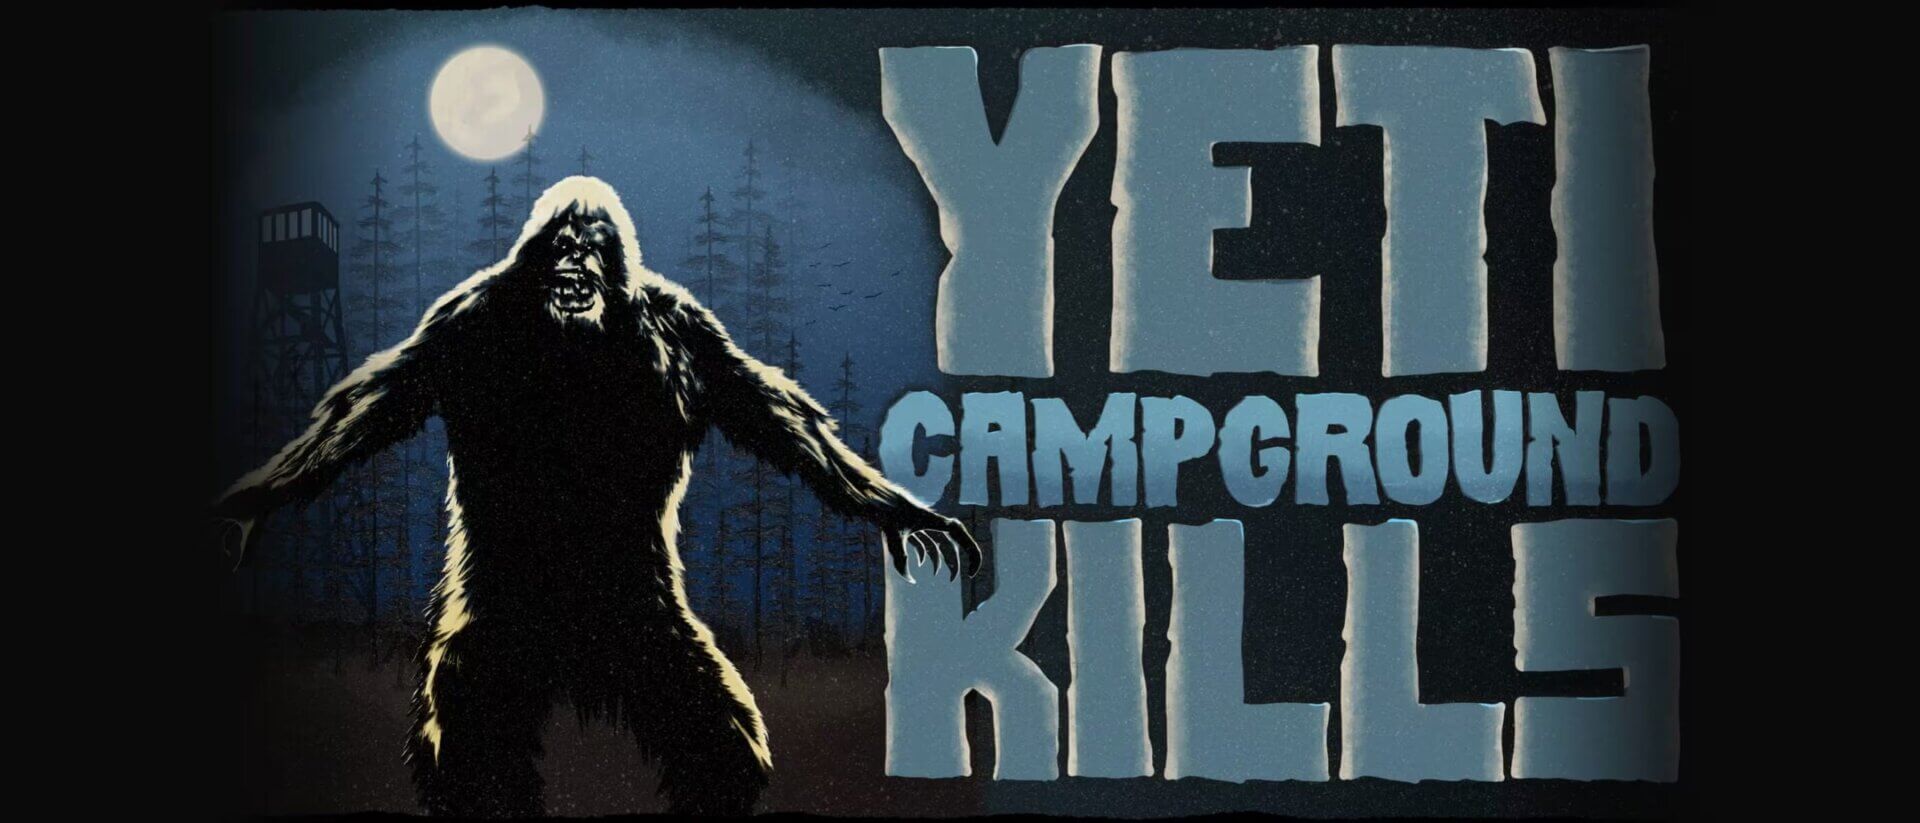 Yeti Campground Kills